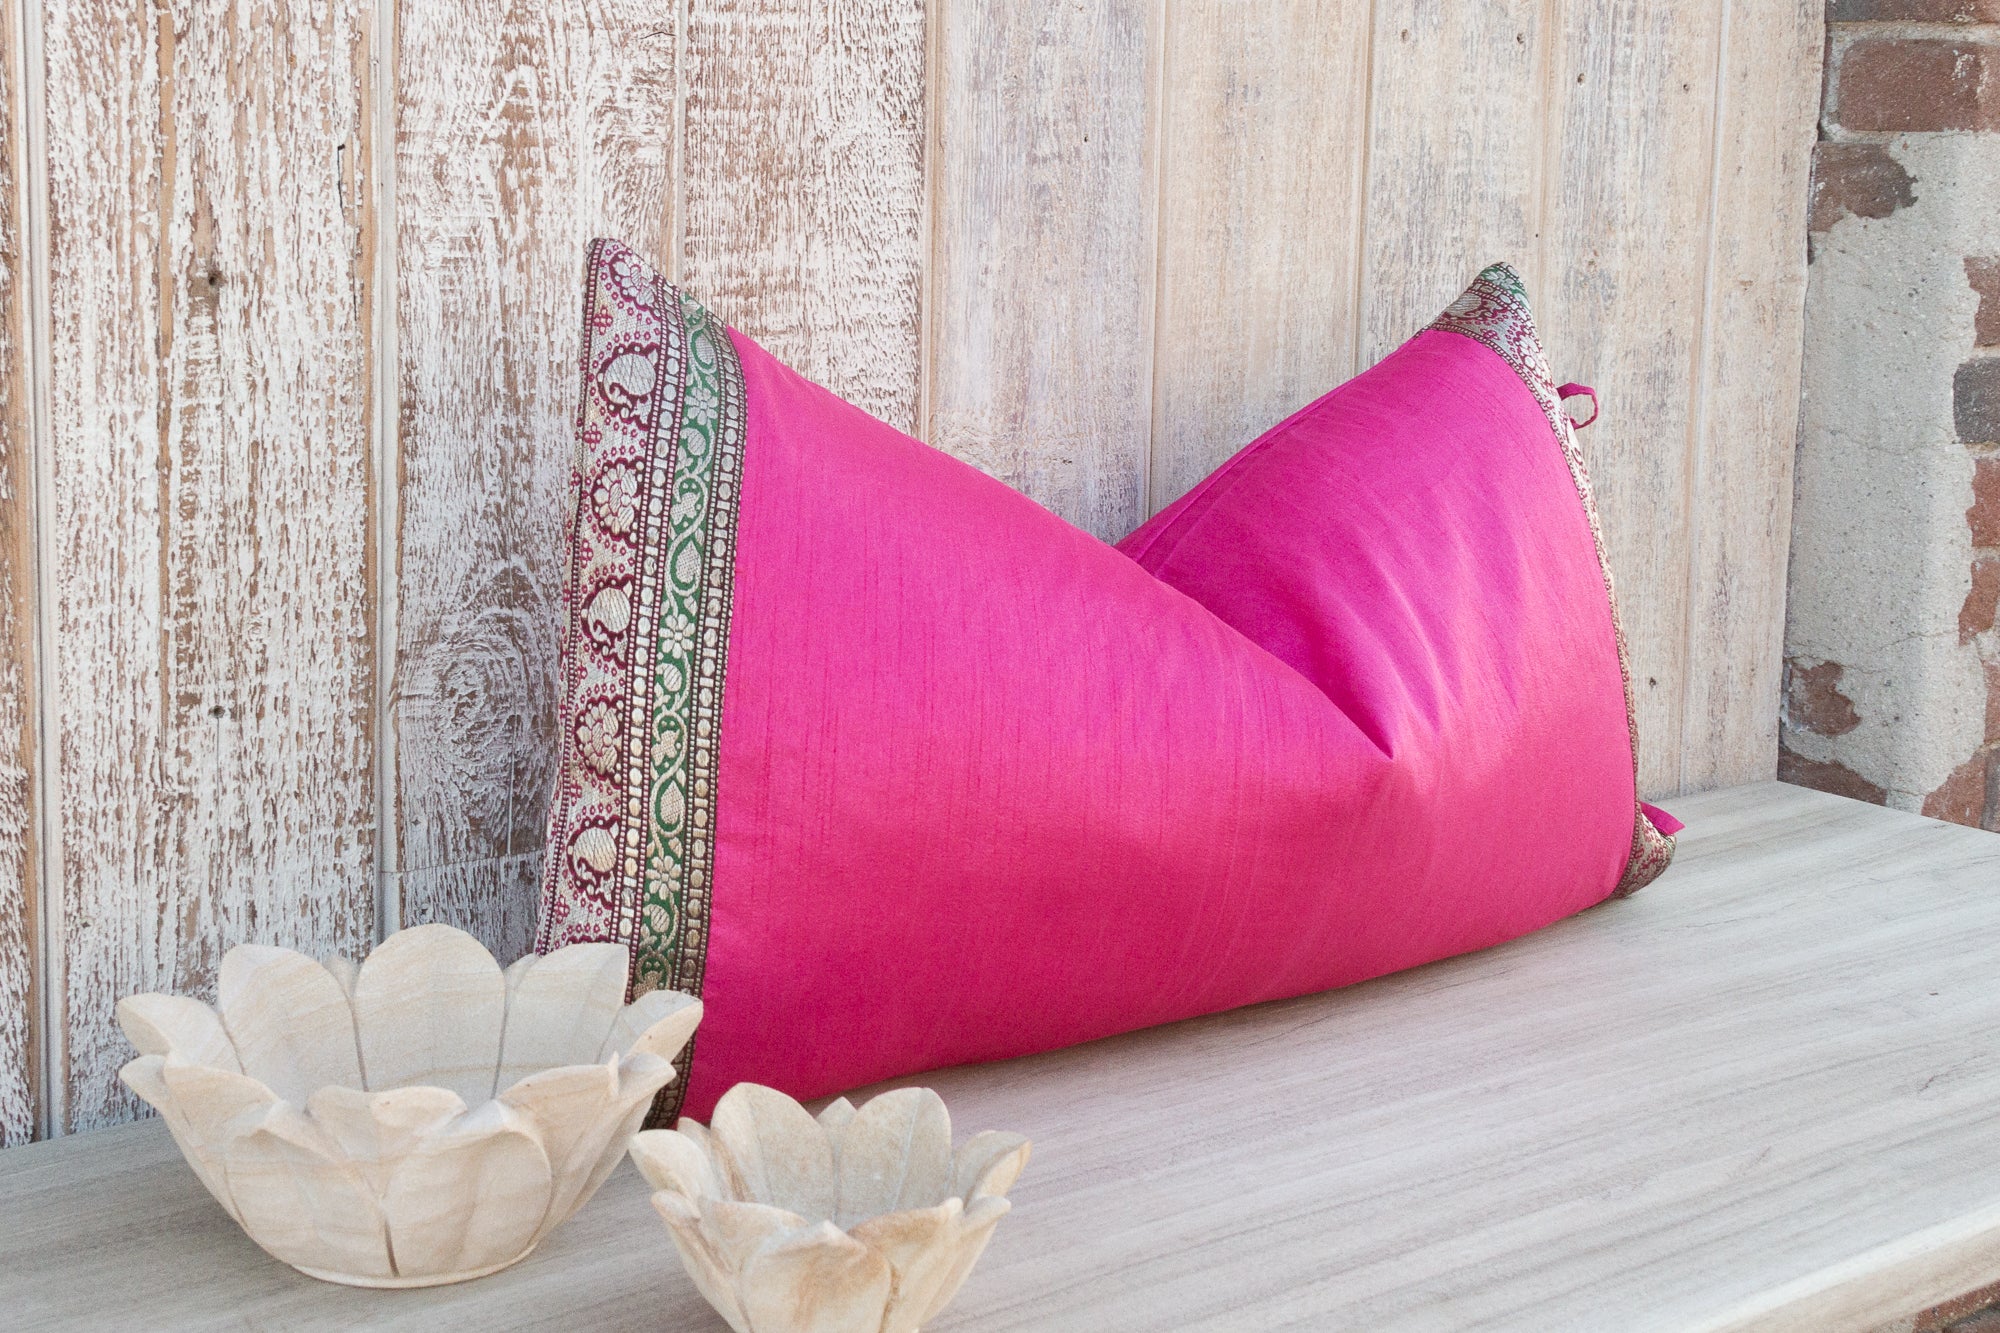 DE-COR | Ispirazione globale, Rosa, grande cuscino di seta indiano festivo per la regina, copripiumino